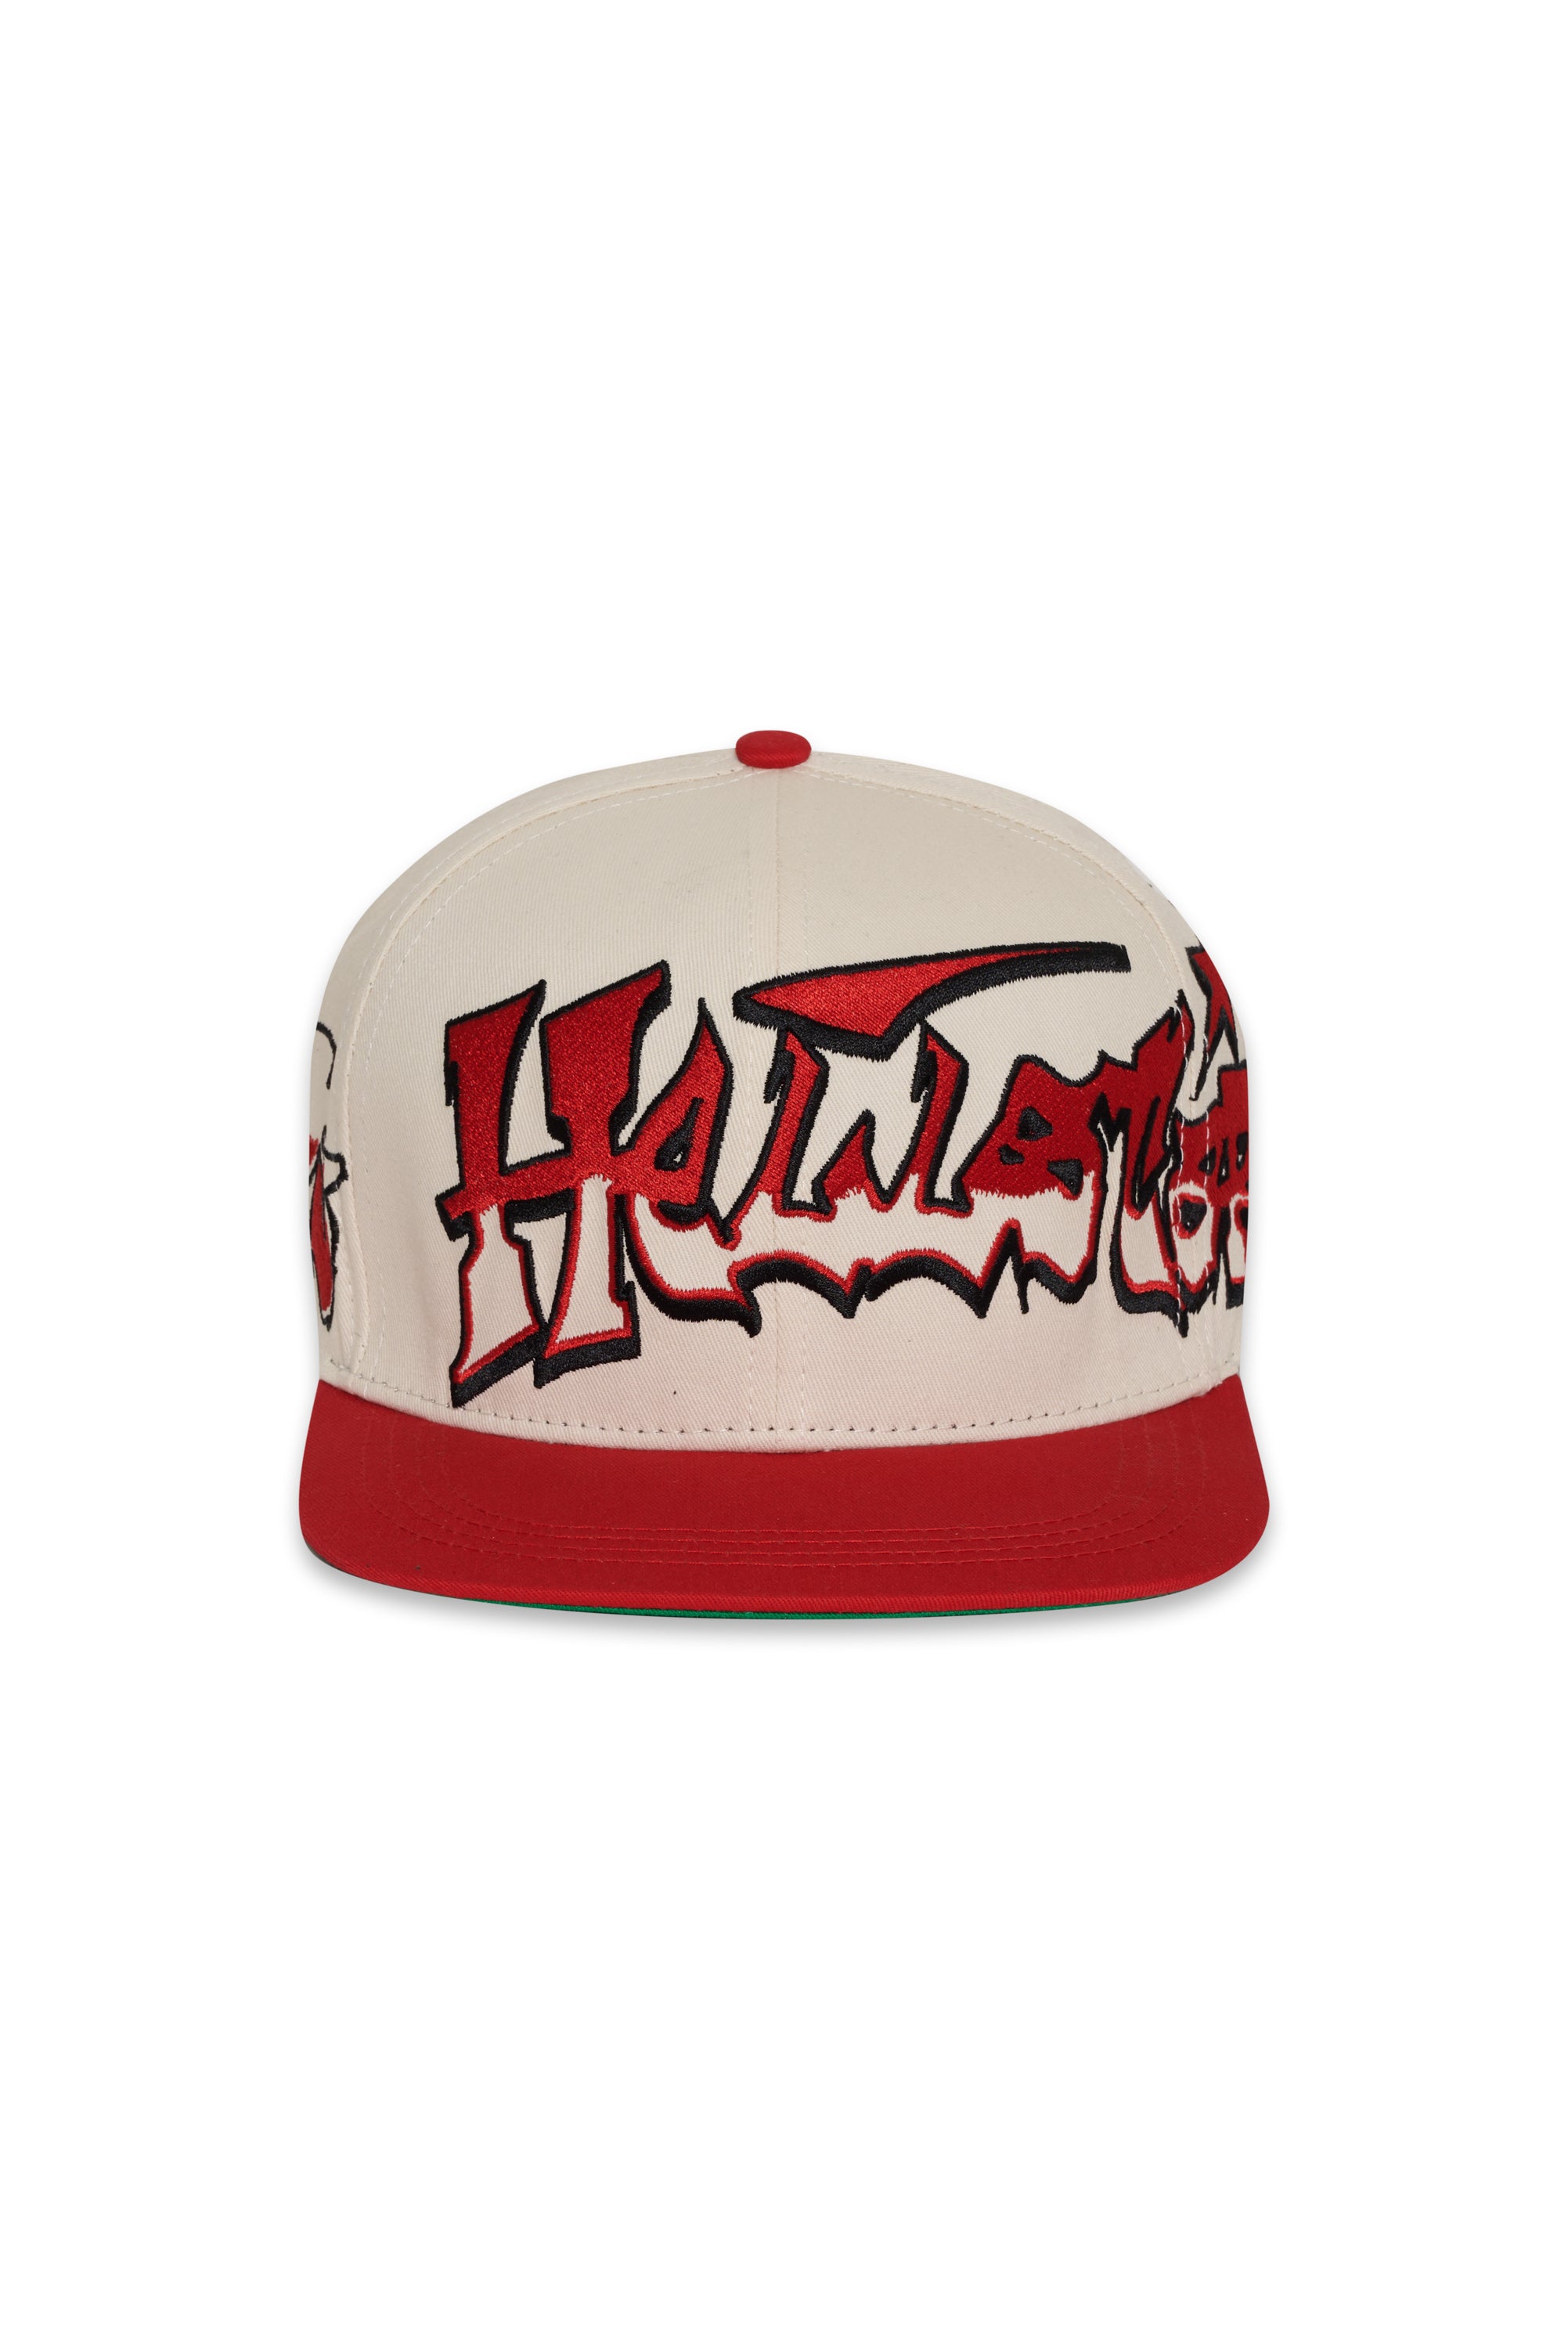 Hellstar Records Hat (Snapback)